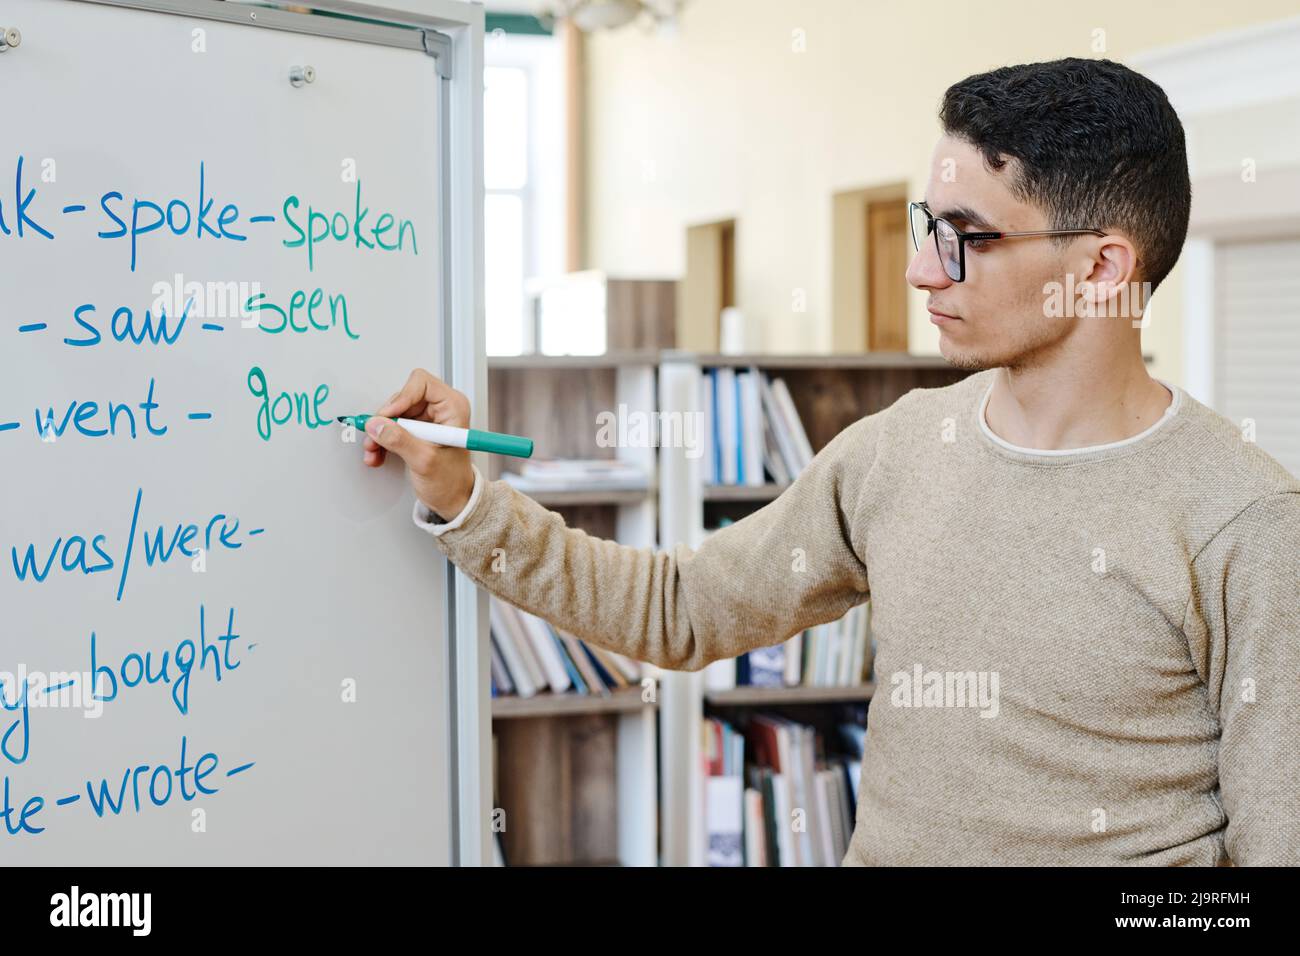 Hübscher junger Studierender aus dem Nahen Osten, der am Whiteboard steht und mit unregelmäßigen Verben Aufgaben erledigt Stockfoto